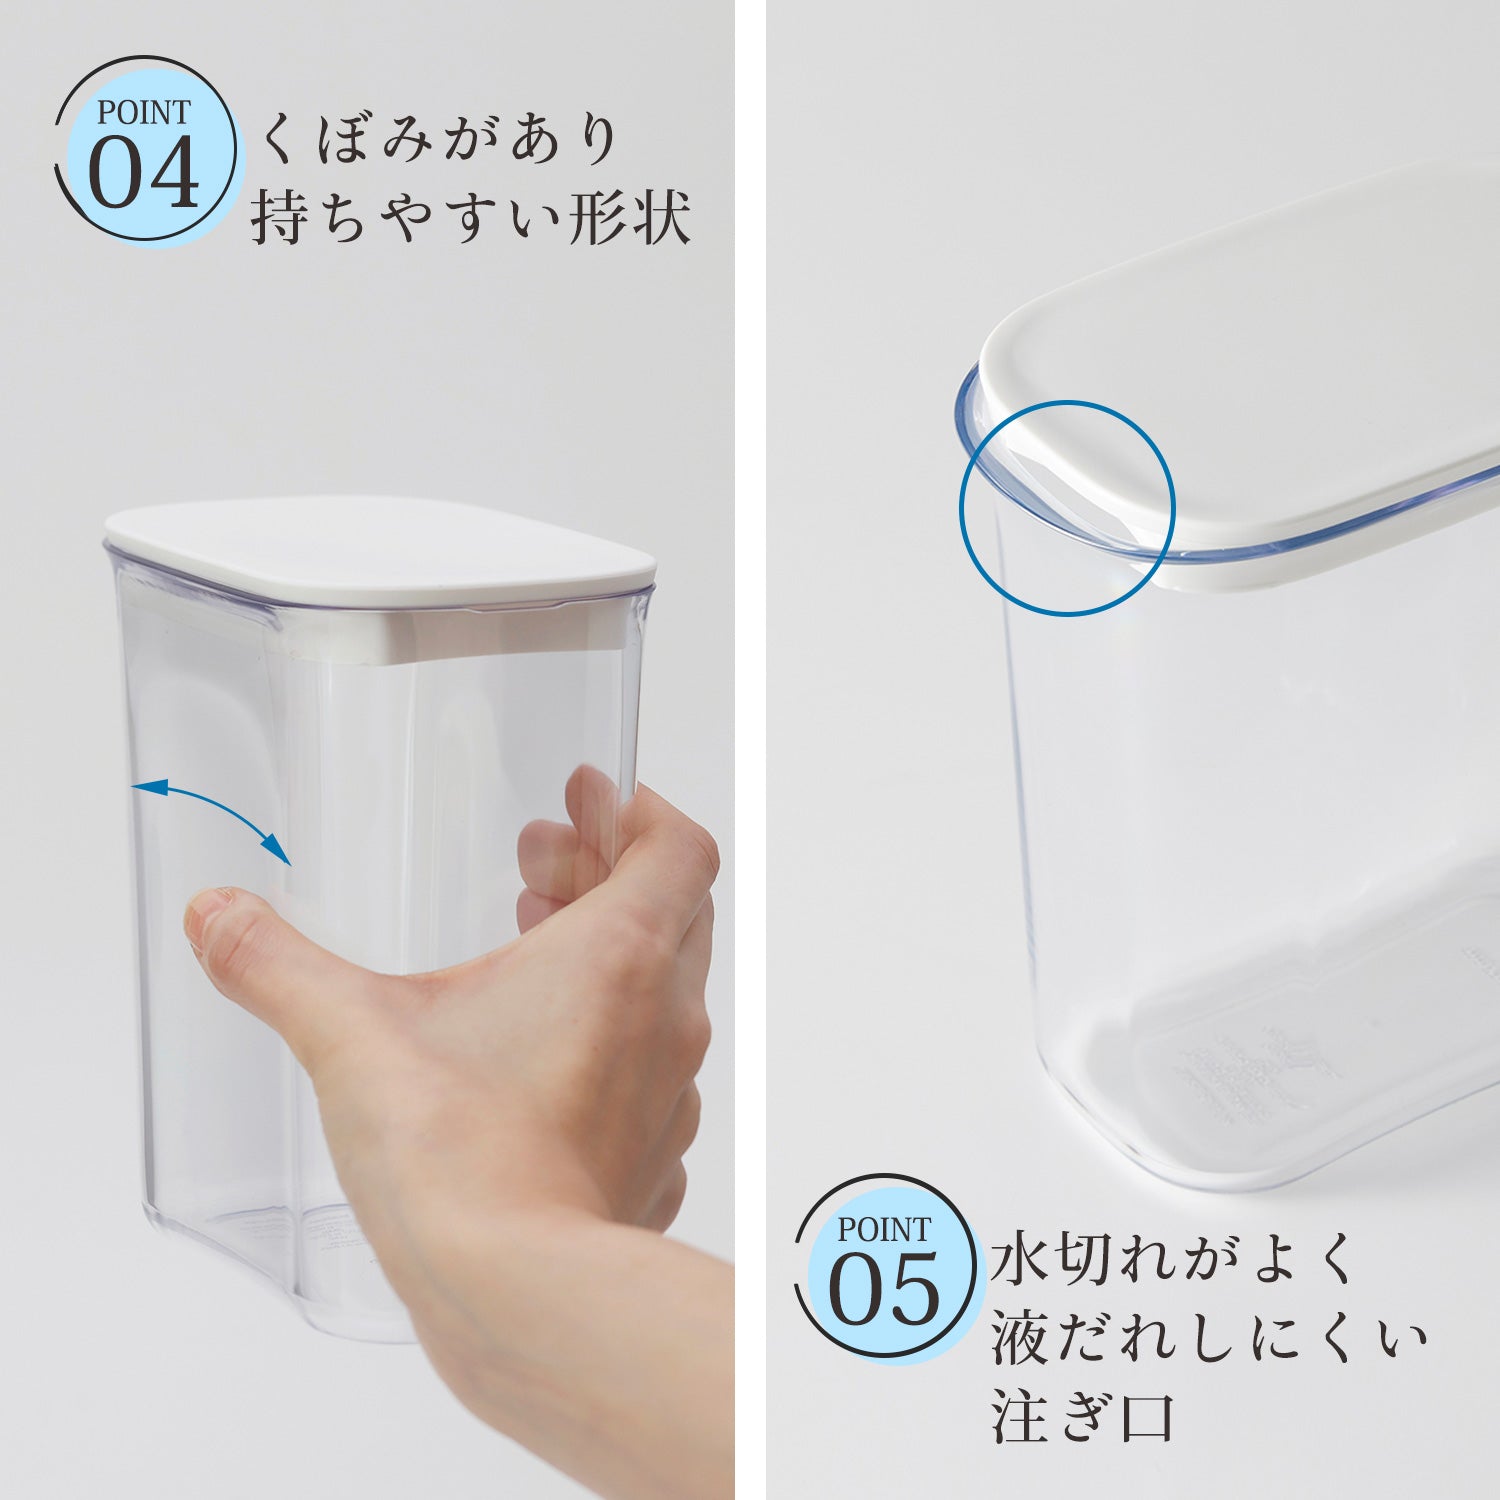 【預購】日本進口 迷你冰箱縫隙冷水瓶 (1L) - Cnjpkitchen ❤️ 🇯🇵日本廚具 家居生活雜貨店